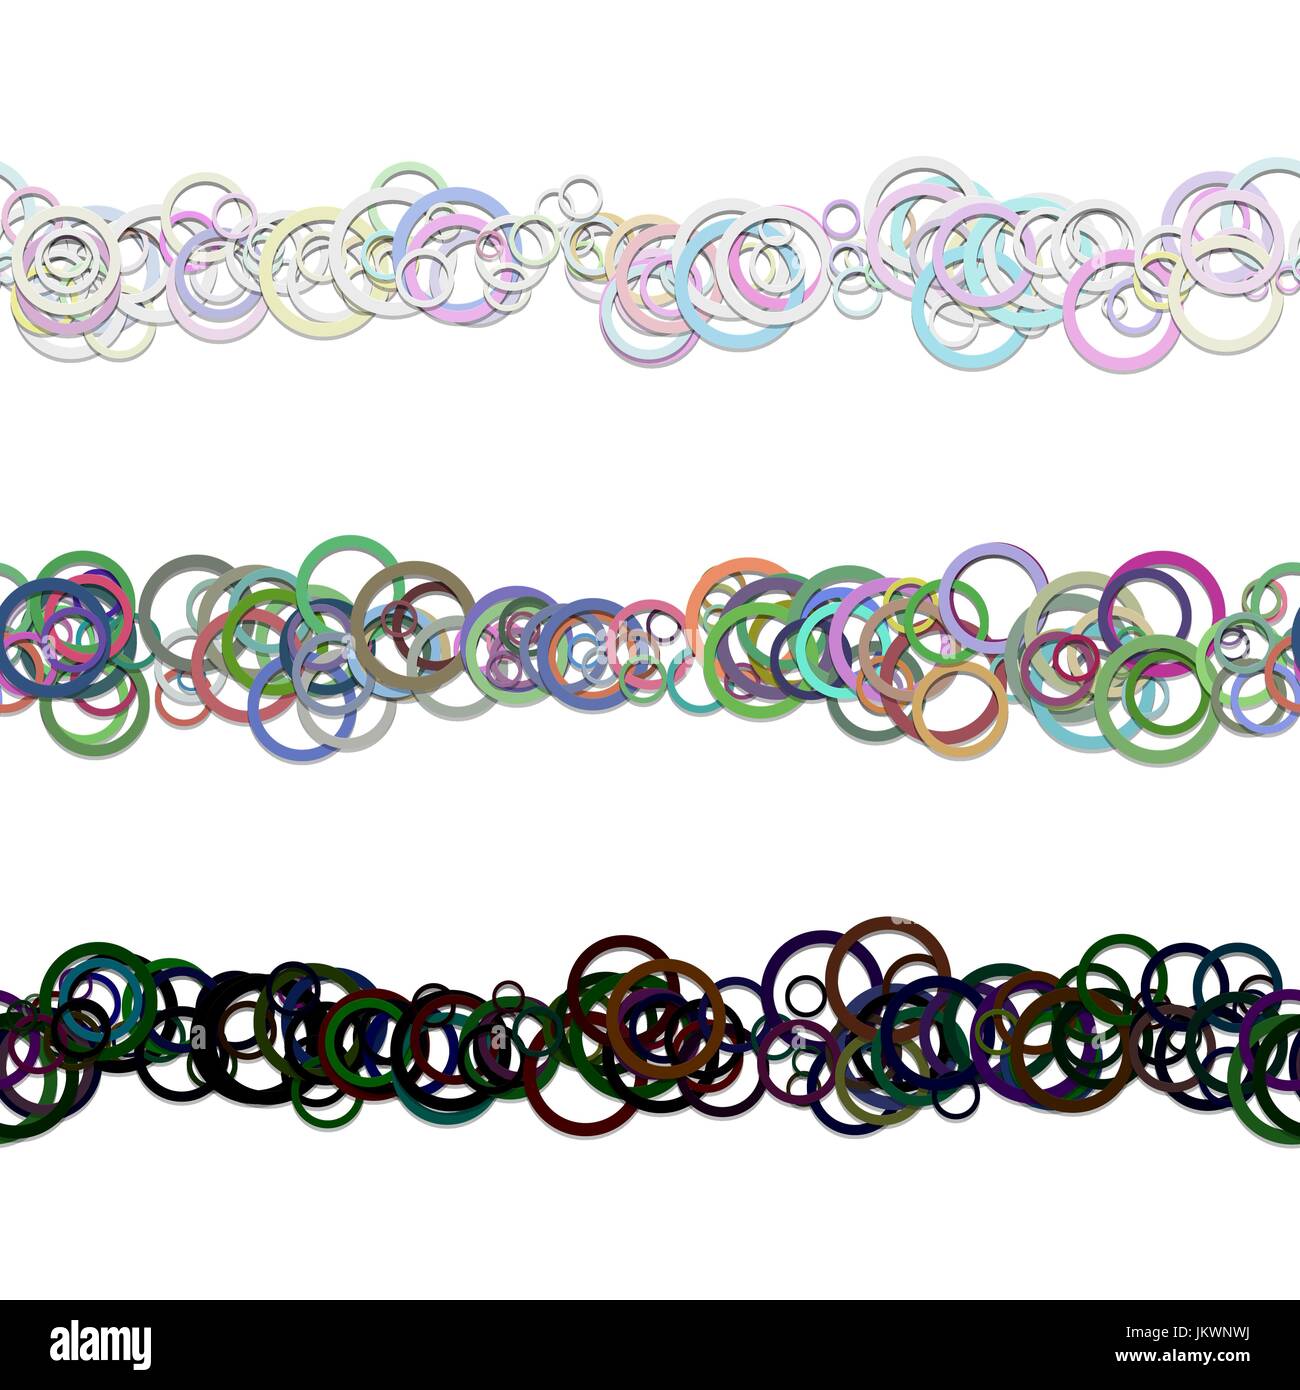 Abstrakt Kreis Muster Text Trennwand Linie Designset von farbigen Ringen - wiederholbare Vektor-grafische Elemente Stock Vektor